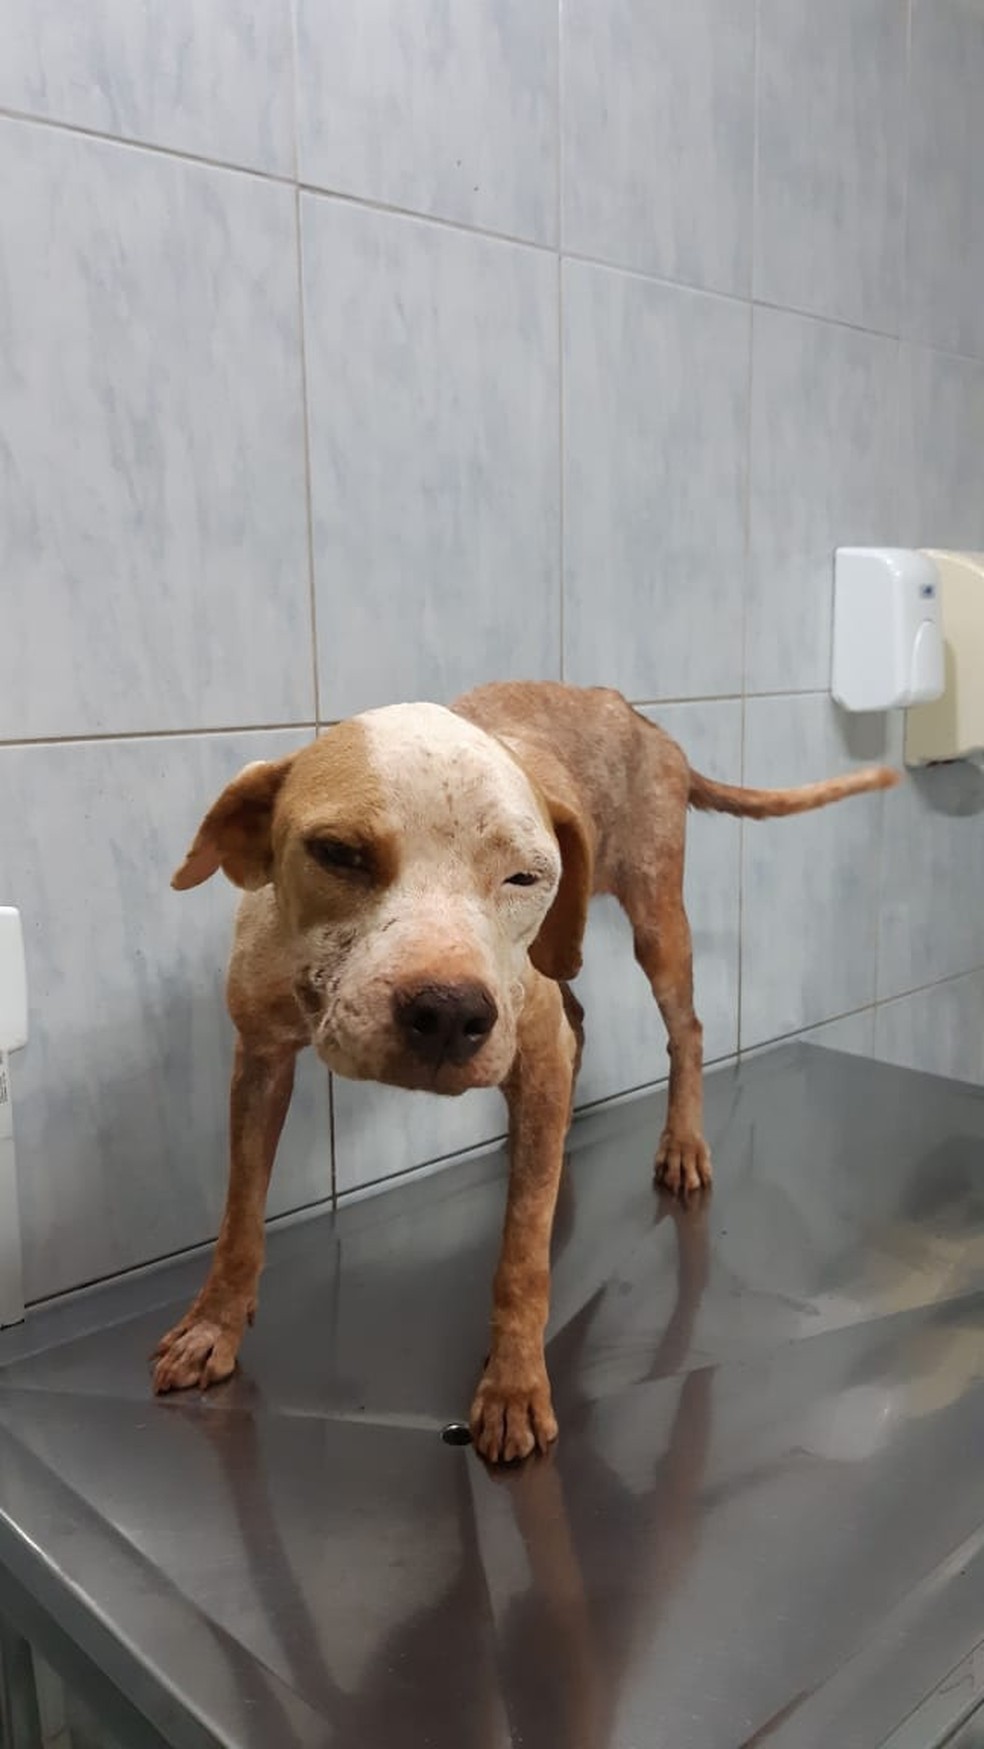 Cachorros e aves infestados de carrapatos, doentes e desnutridos foram resgatados de casa em Araputanga — Foto: Tribunal de Justiça de Mato Grosso/Assessoria